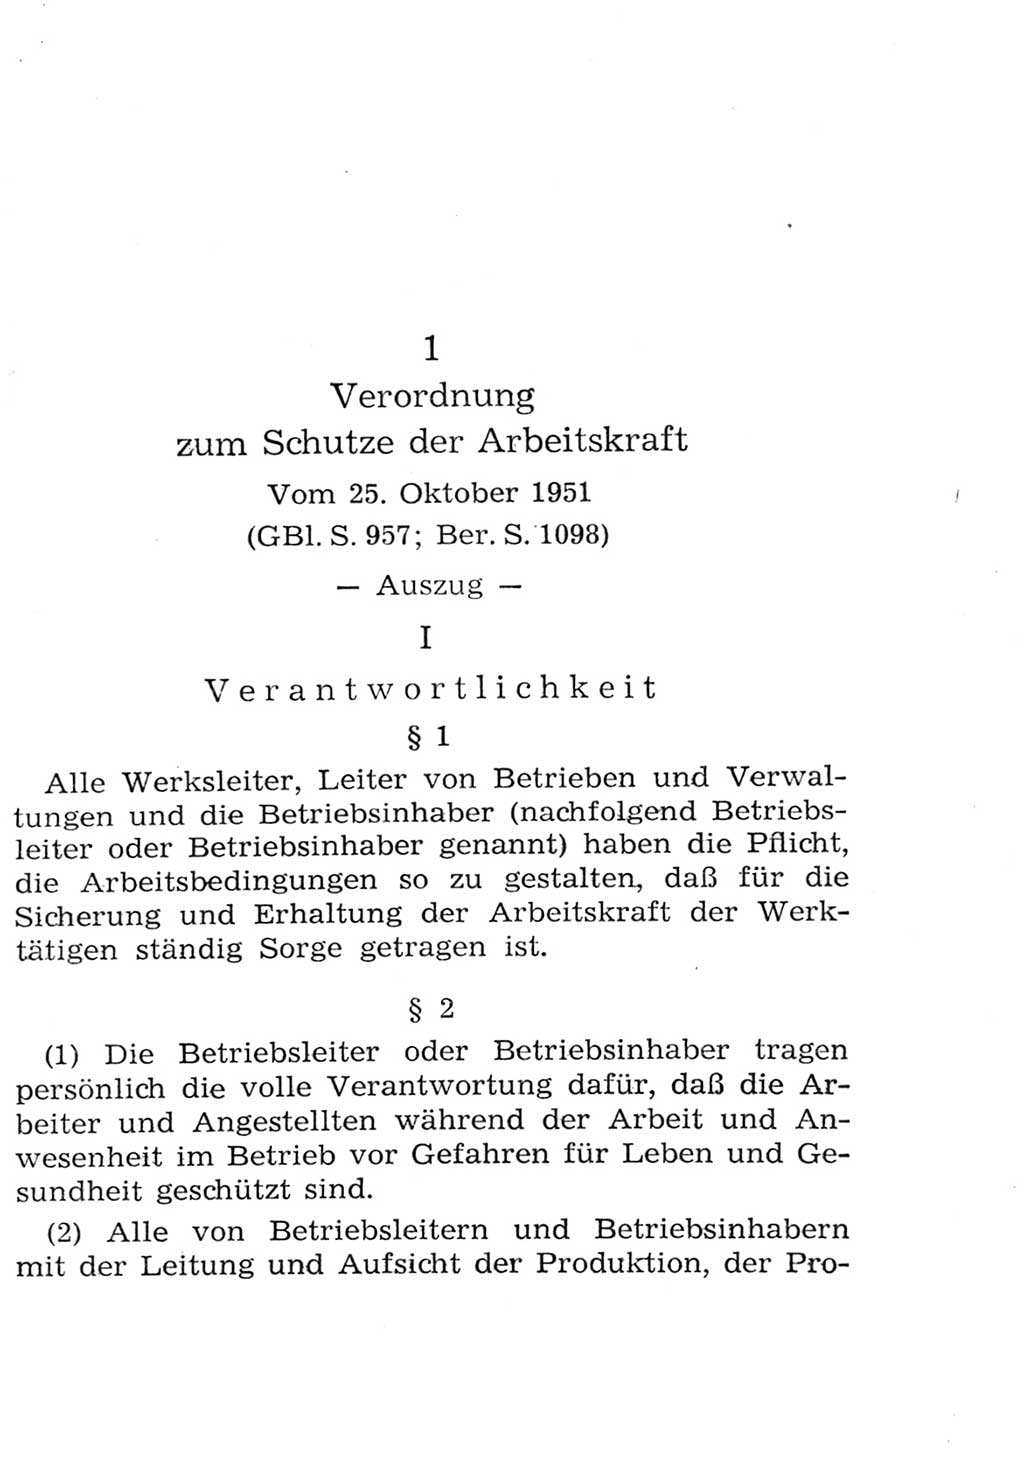 Strafgesetzbuch (StGB) und andere Strafgesetze [Deutsche Demokratische Republik (DDR)] 1957, Seite 333 (StGB Strafges. DDR 1957, S. 333)